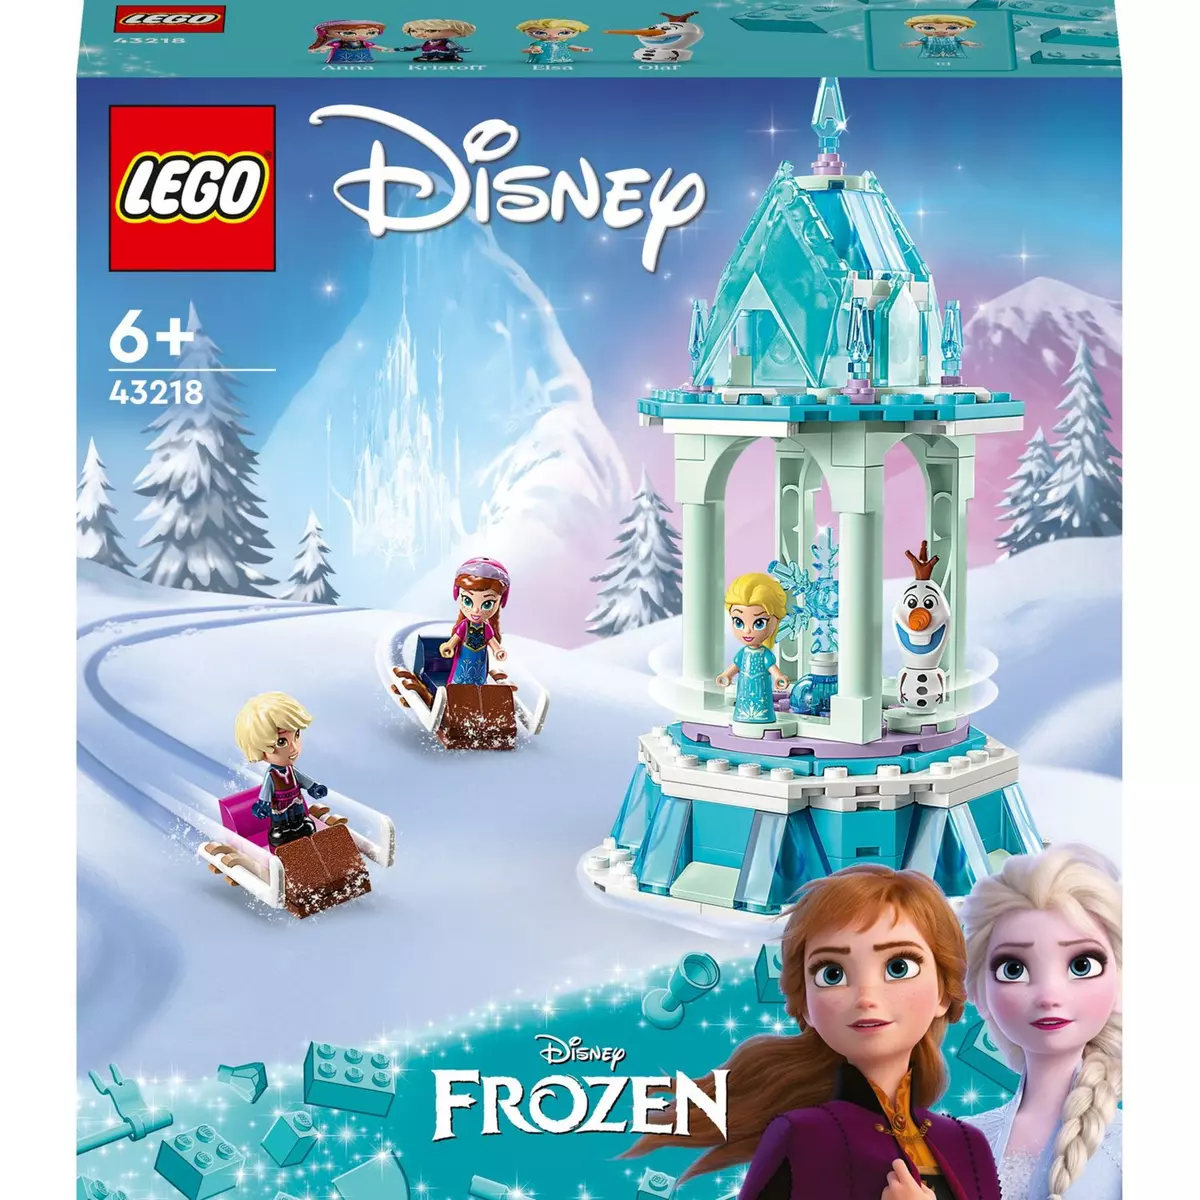 Le château d'Elsa Reine des Neiges - Mini-poupée - Disney Frozen